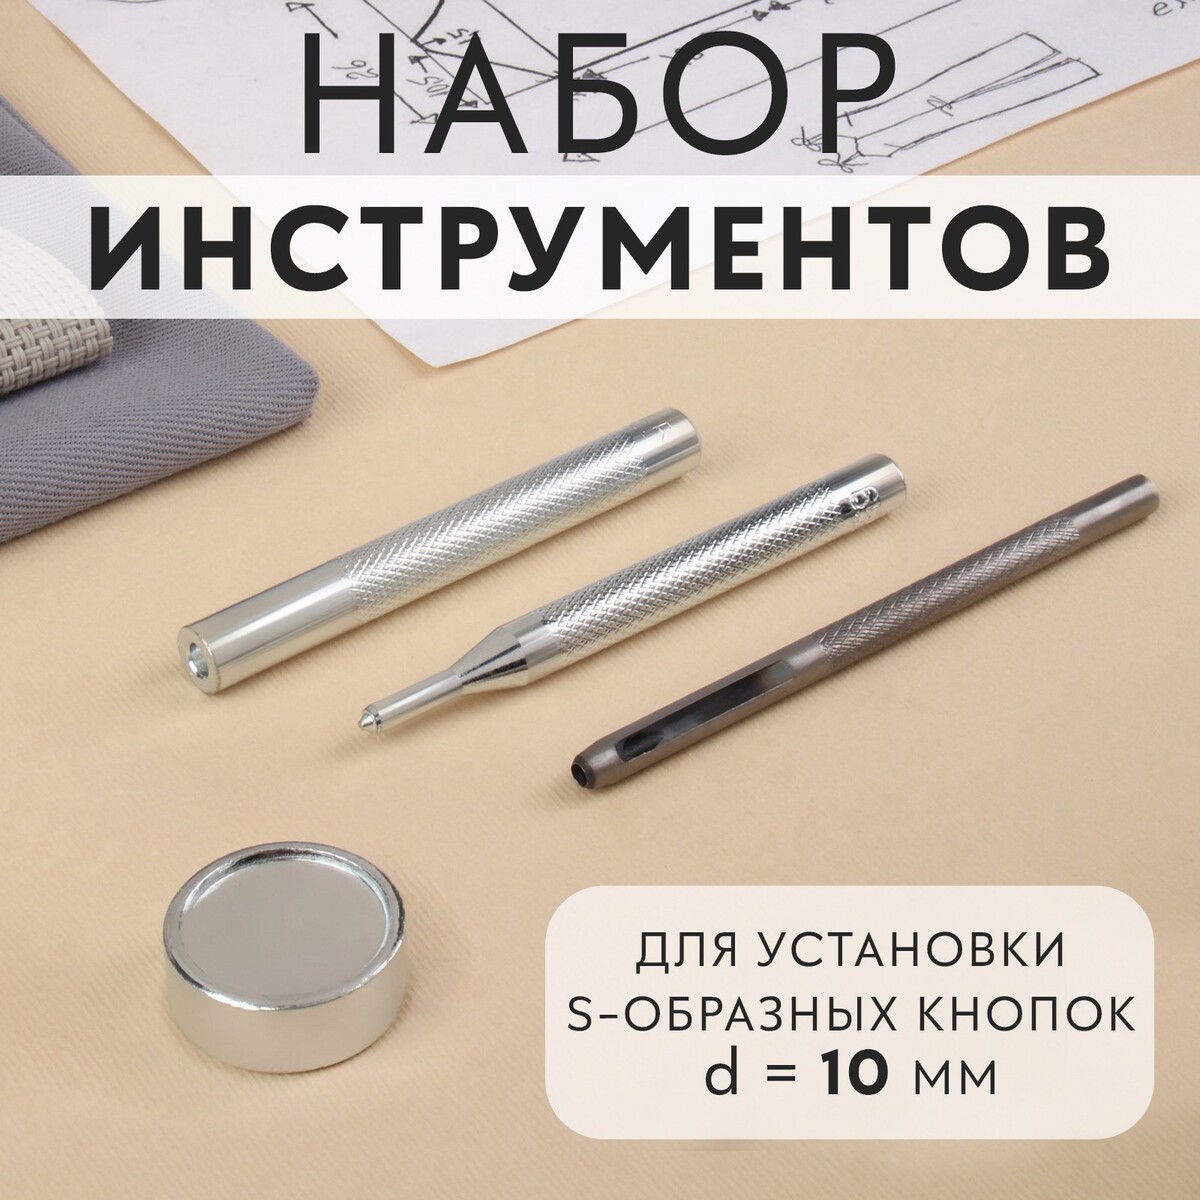 Набор инструментов для ручной установки s-образных кнопок №655, d = 10 мм набор инструментов для ручной установки о образных кнопок 201 d 15 мм